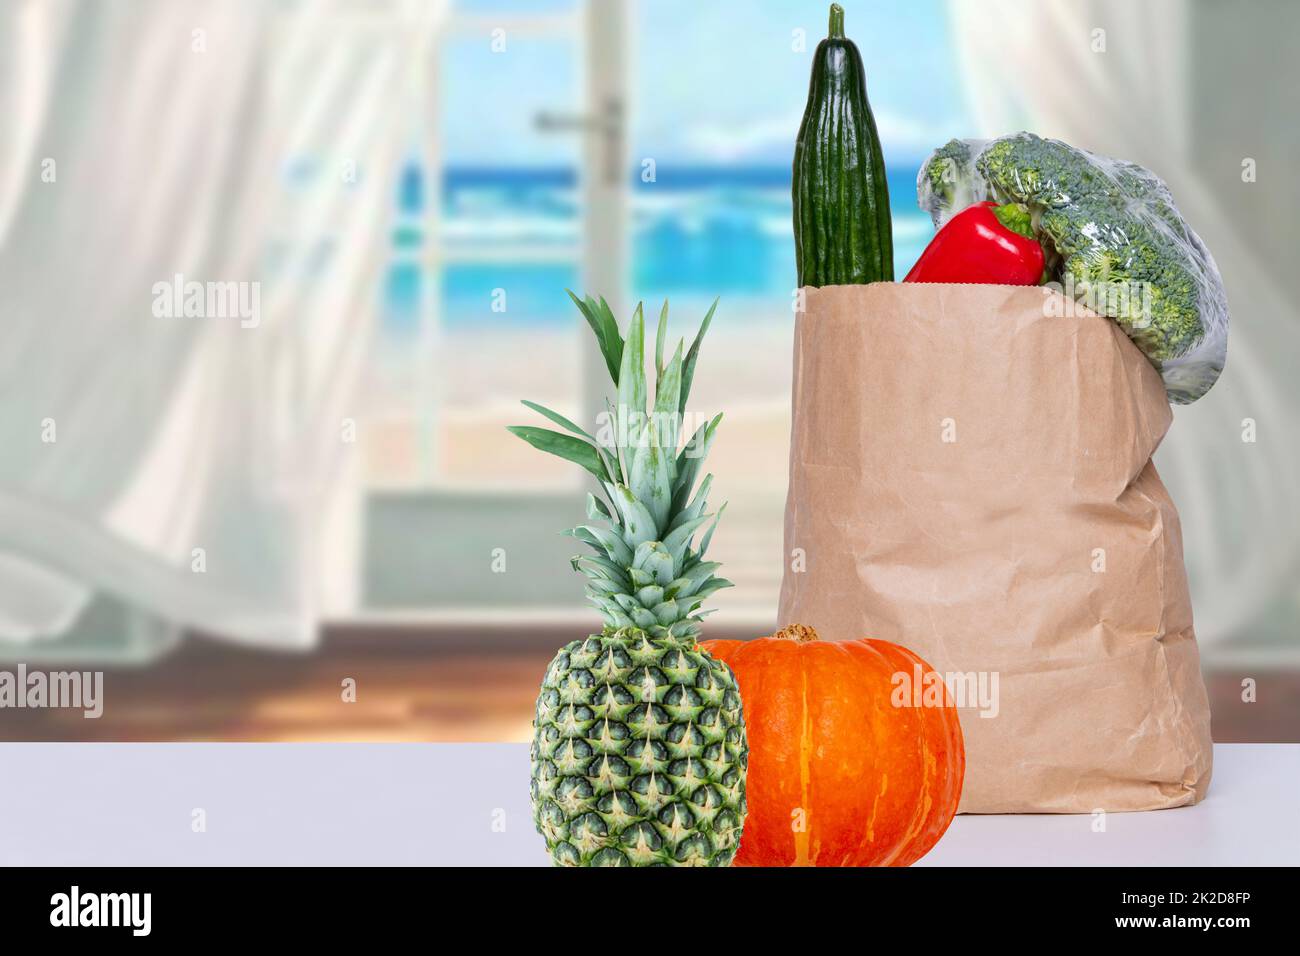 Nahaufnahme einer braunen Einkaufstasche aus Papier mit frischem Gemüse, einem Kürbis und einer Ananas auf dem Tisch über einem abstrakten, verschwommenen Meereshintergrund. Konzept der Stärkung des Immunsystems. Speicherplatz kopieren. Stockfoto